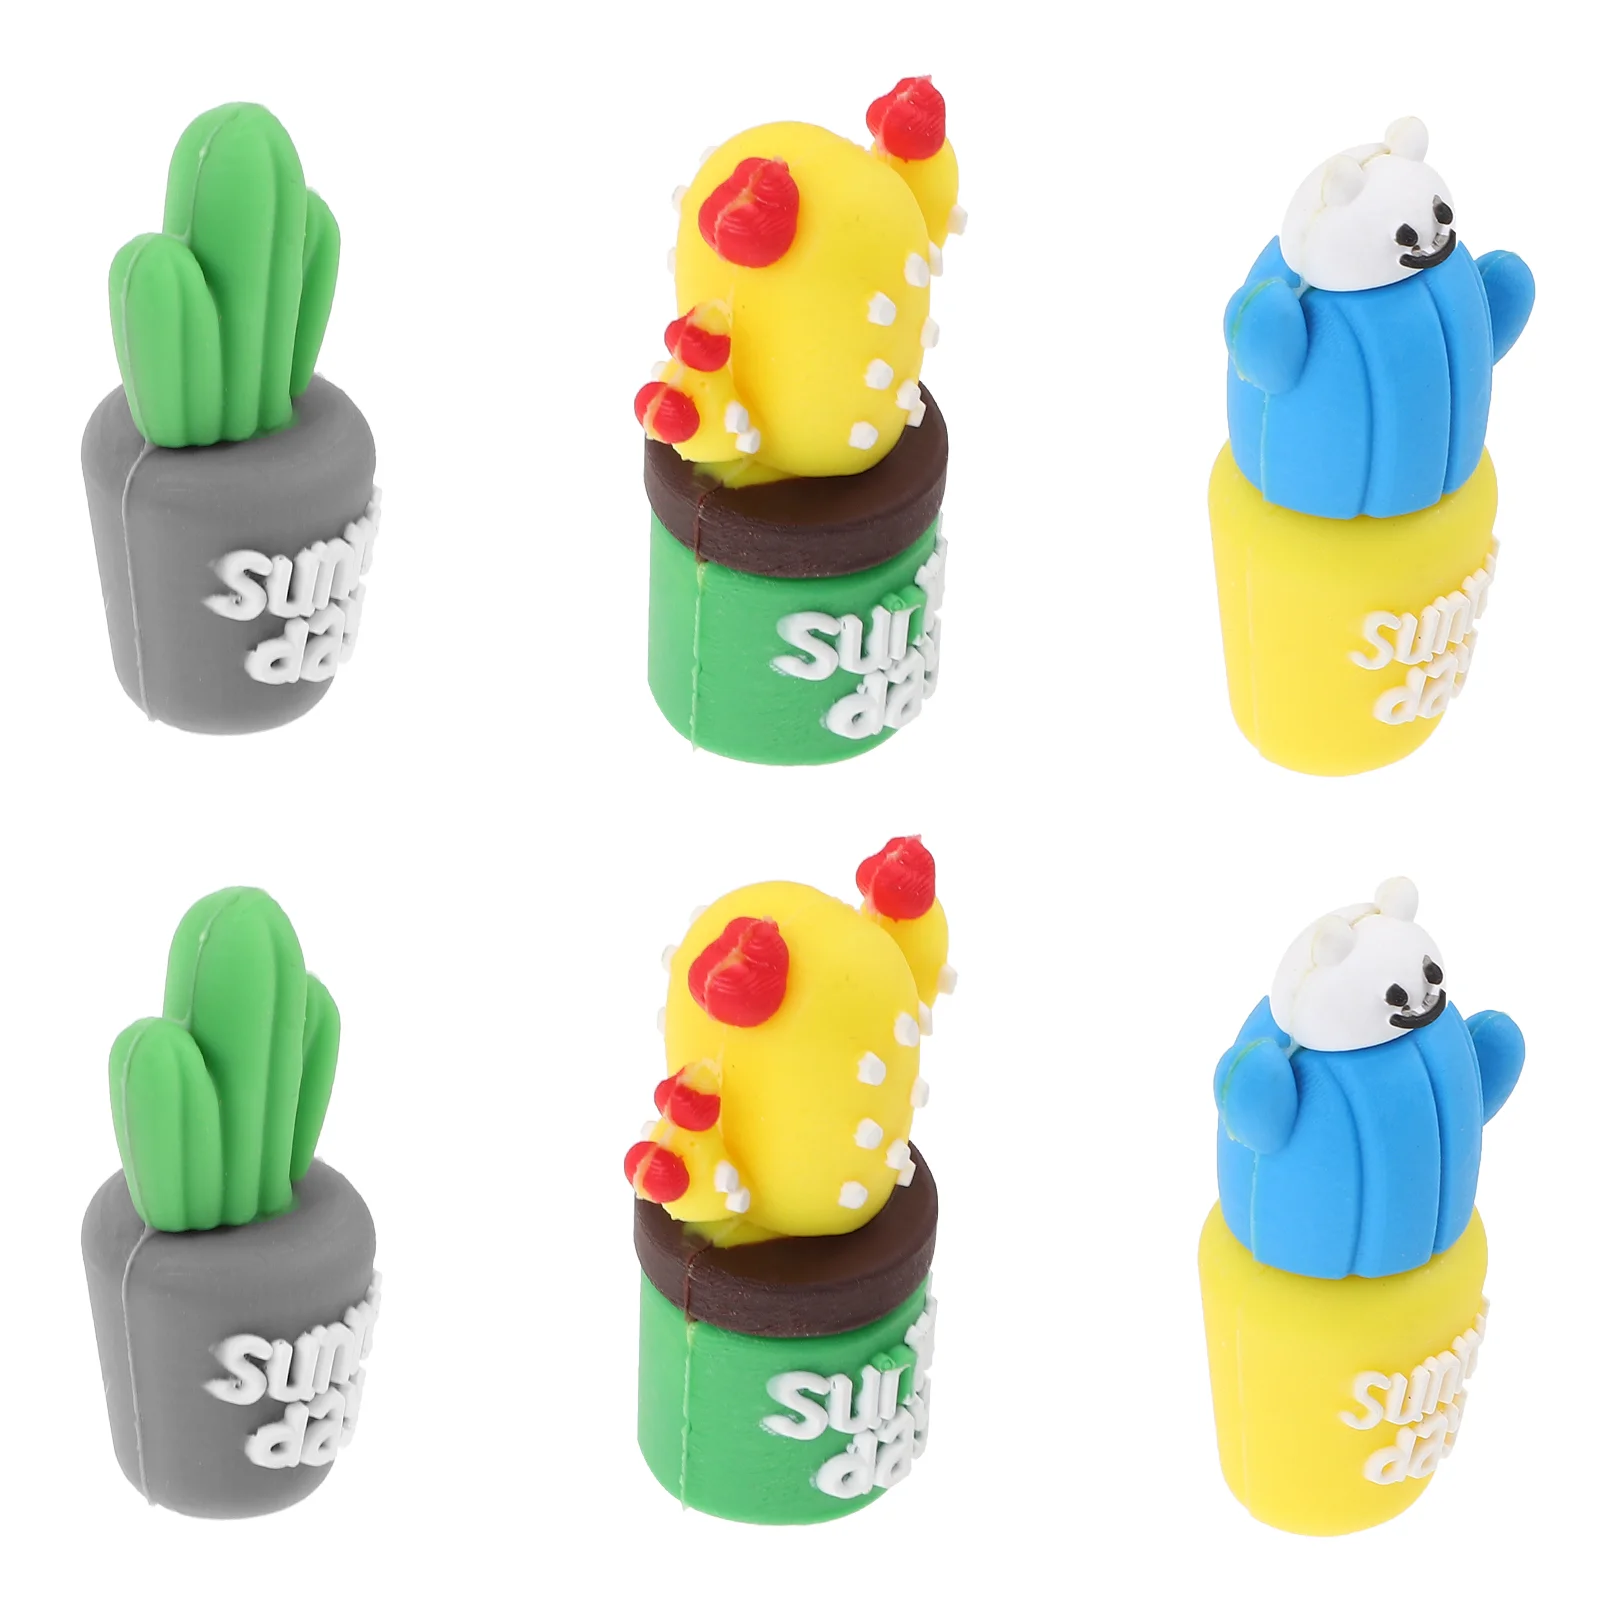 

12 Pcs Cactus Pen Set Flexible Pencil Extenders Hats Extenders Cap Silicone Caps Adorable Protectors Silica Gel Cartoon Pupils